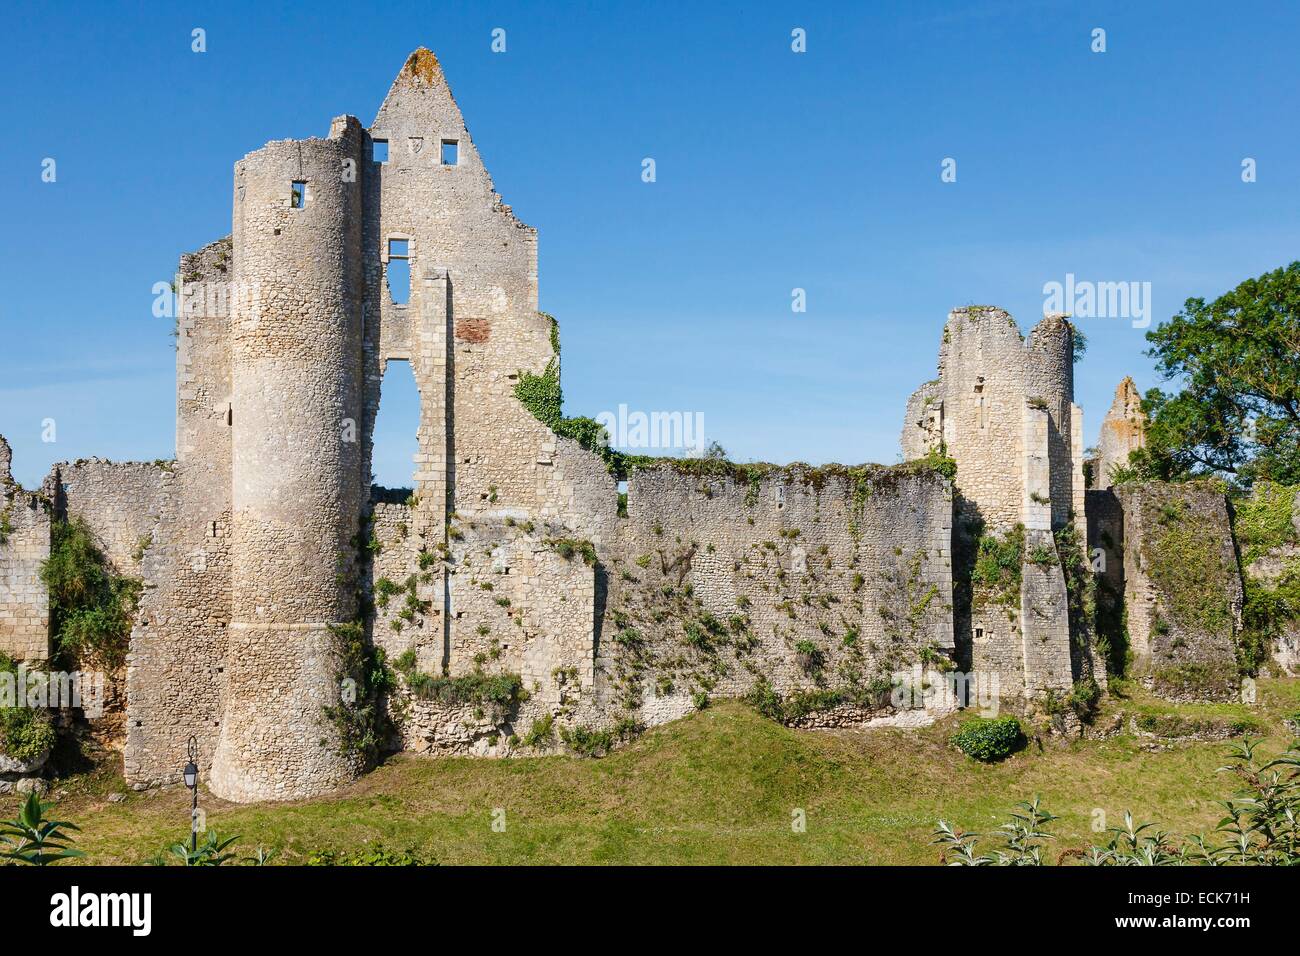 France, Vienne, Angles sur l'Anglin, labelled Les Plus Beaux Villages de France (The MoSaint Beautiful Villages of France), the castle Stock Photo